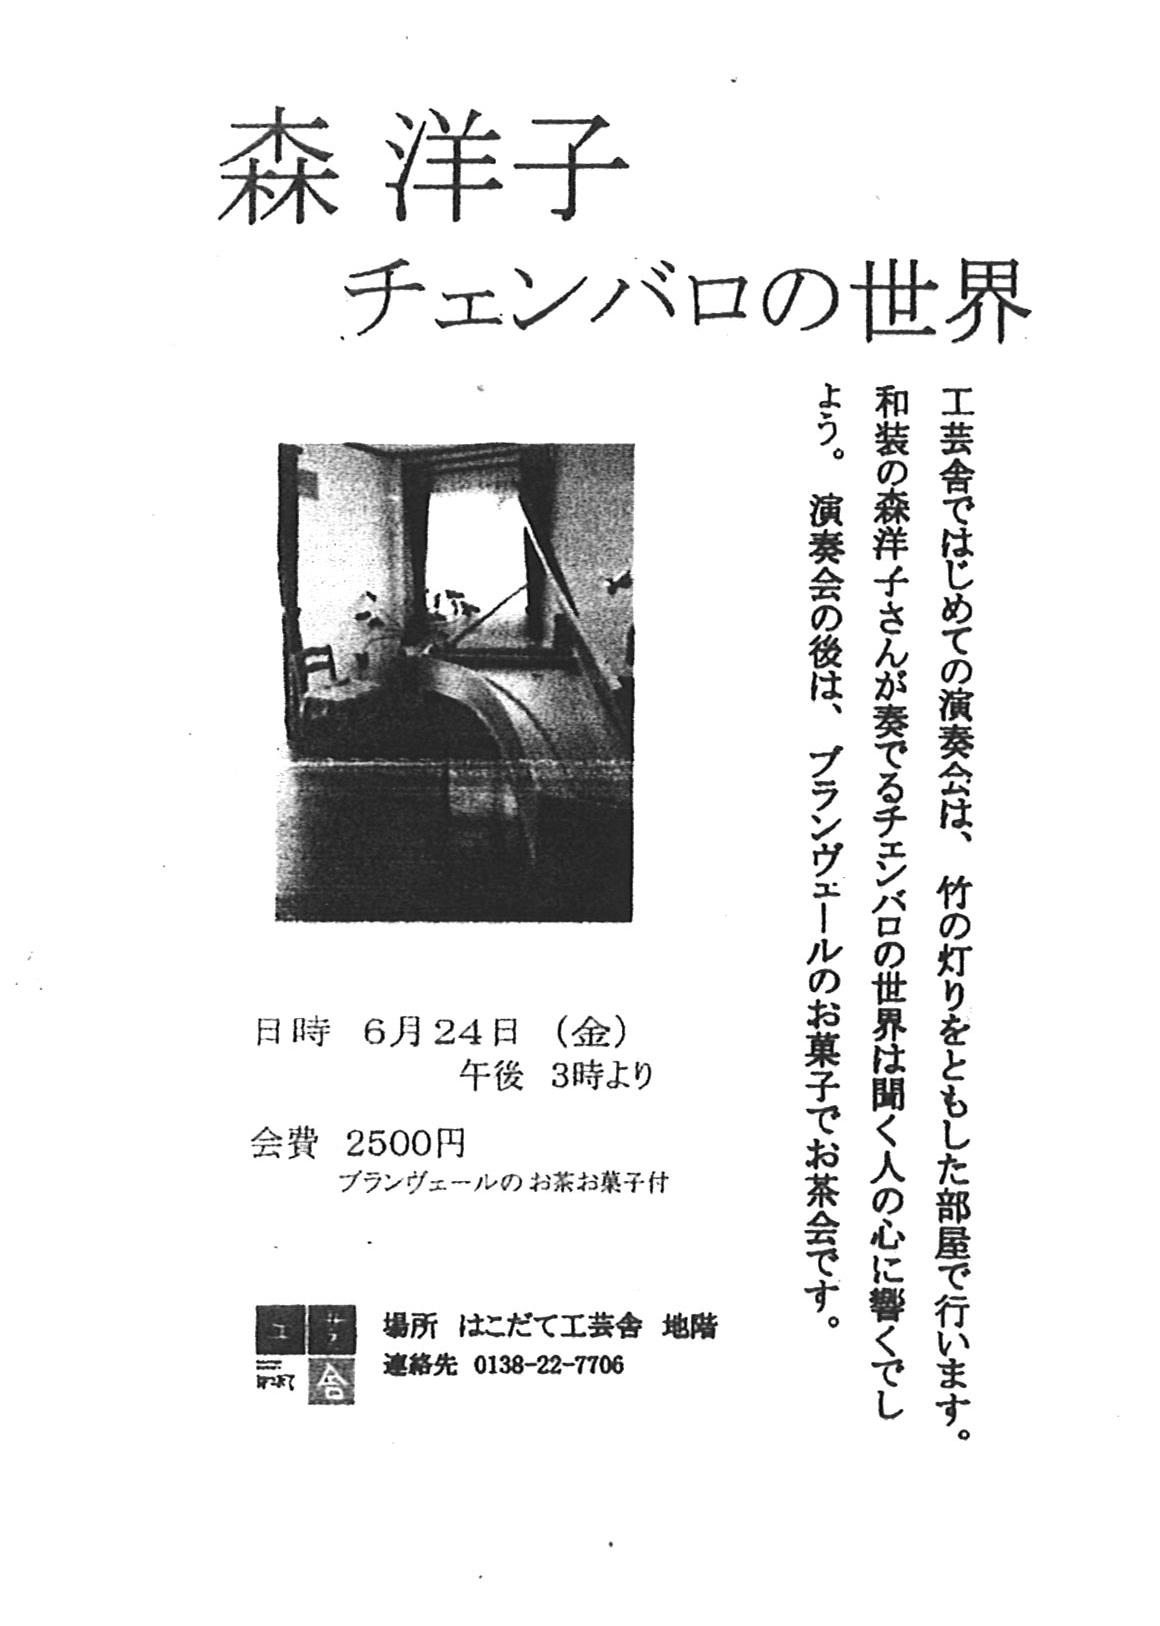 http://www.hakomachi.com/townnews/images/kougeisha110624-3.jpg